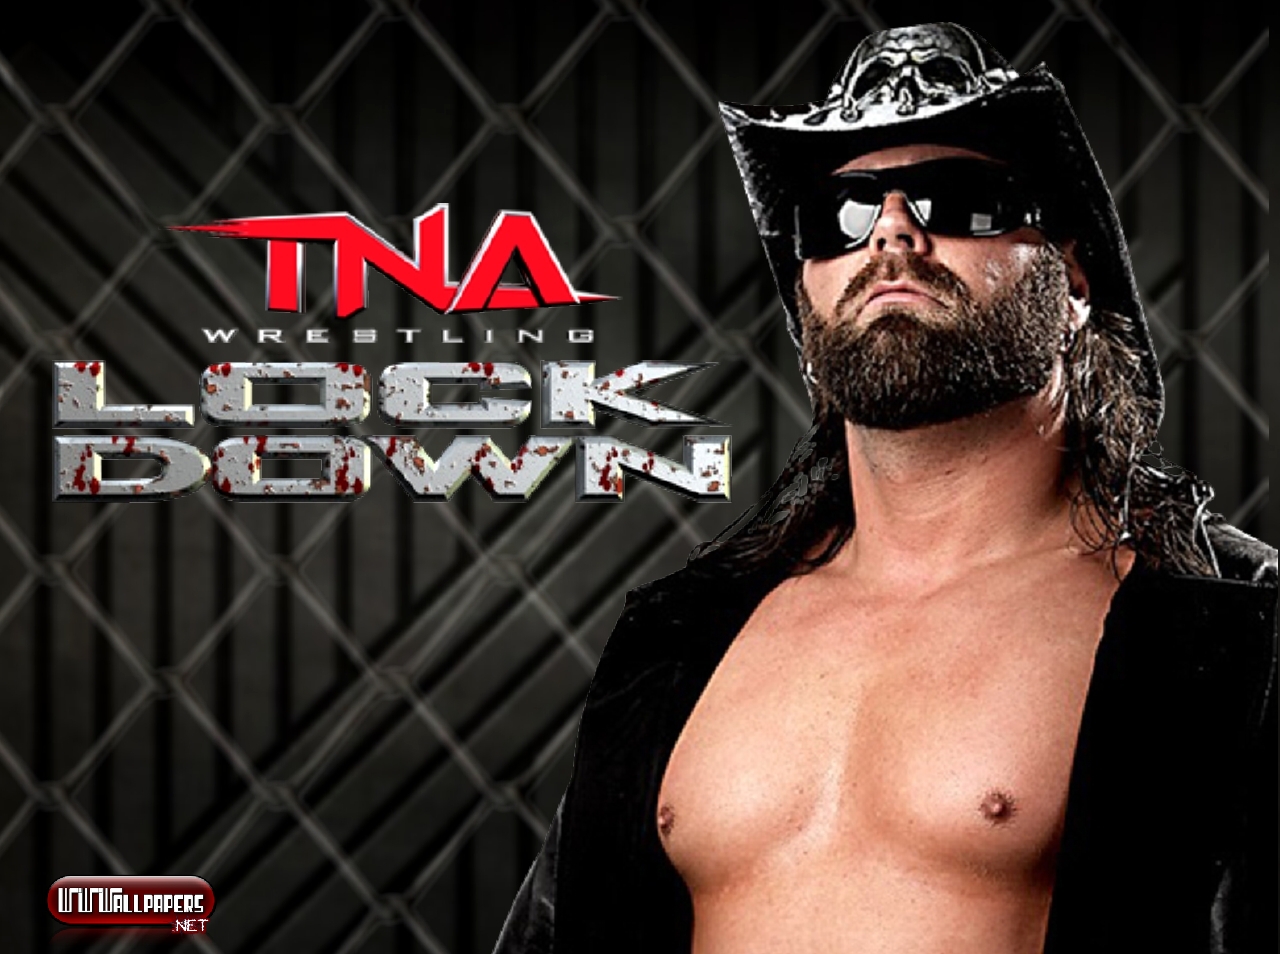 Wwe выпуски на русском. WWE на русском. TNA 1/2. TNA дискография. Реслинг от 545 ТВ.